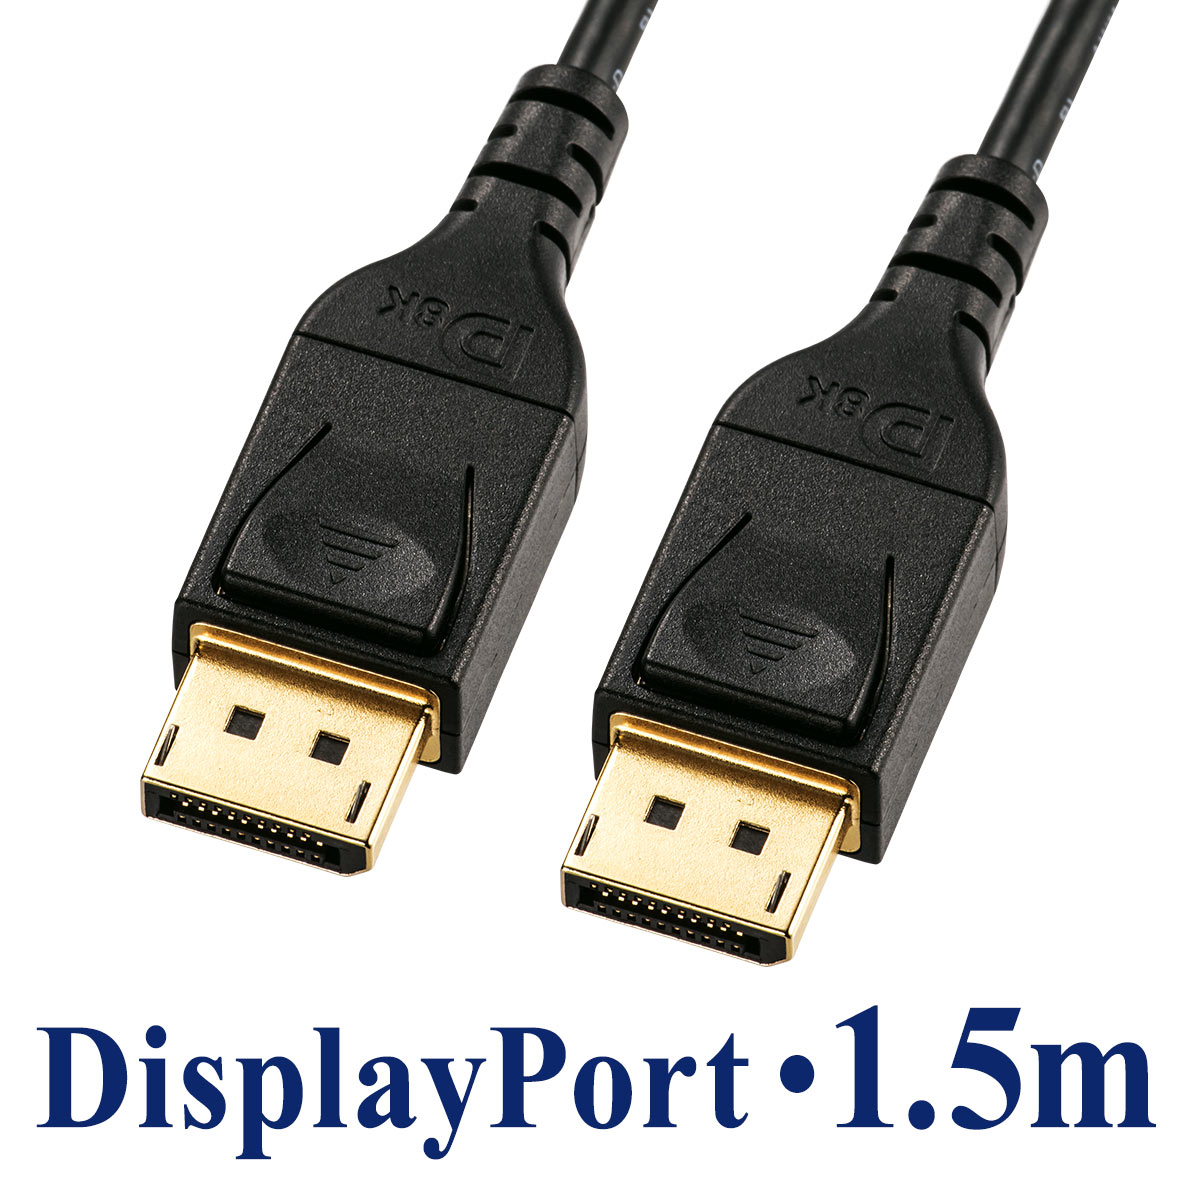 ディスプレイポートケーブル 1.5m DisplayPortケーブル 8K 60Hz 4K 120Hz HDR10対応 バージョン1.4認証品 ブラック